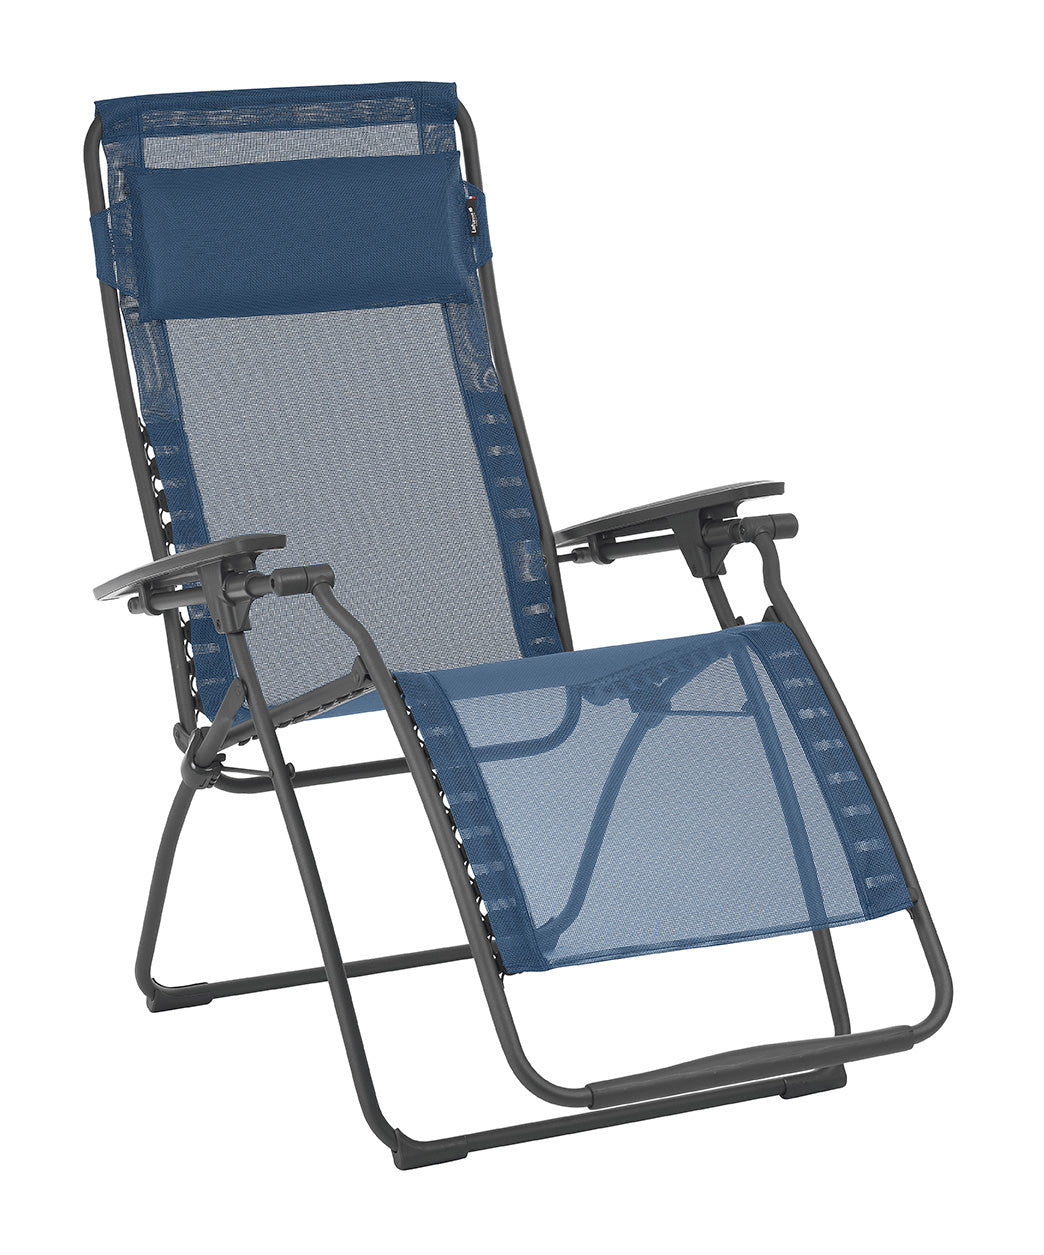 28" Green and Gray Steel Indoor Outdoor Zero Gravity Chair